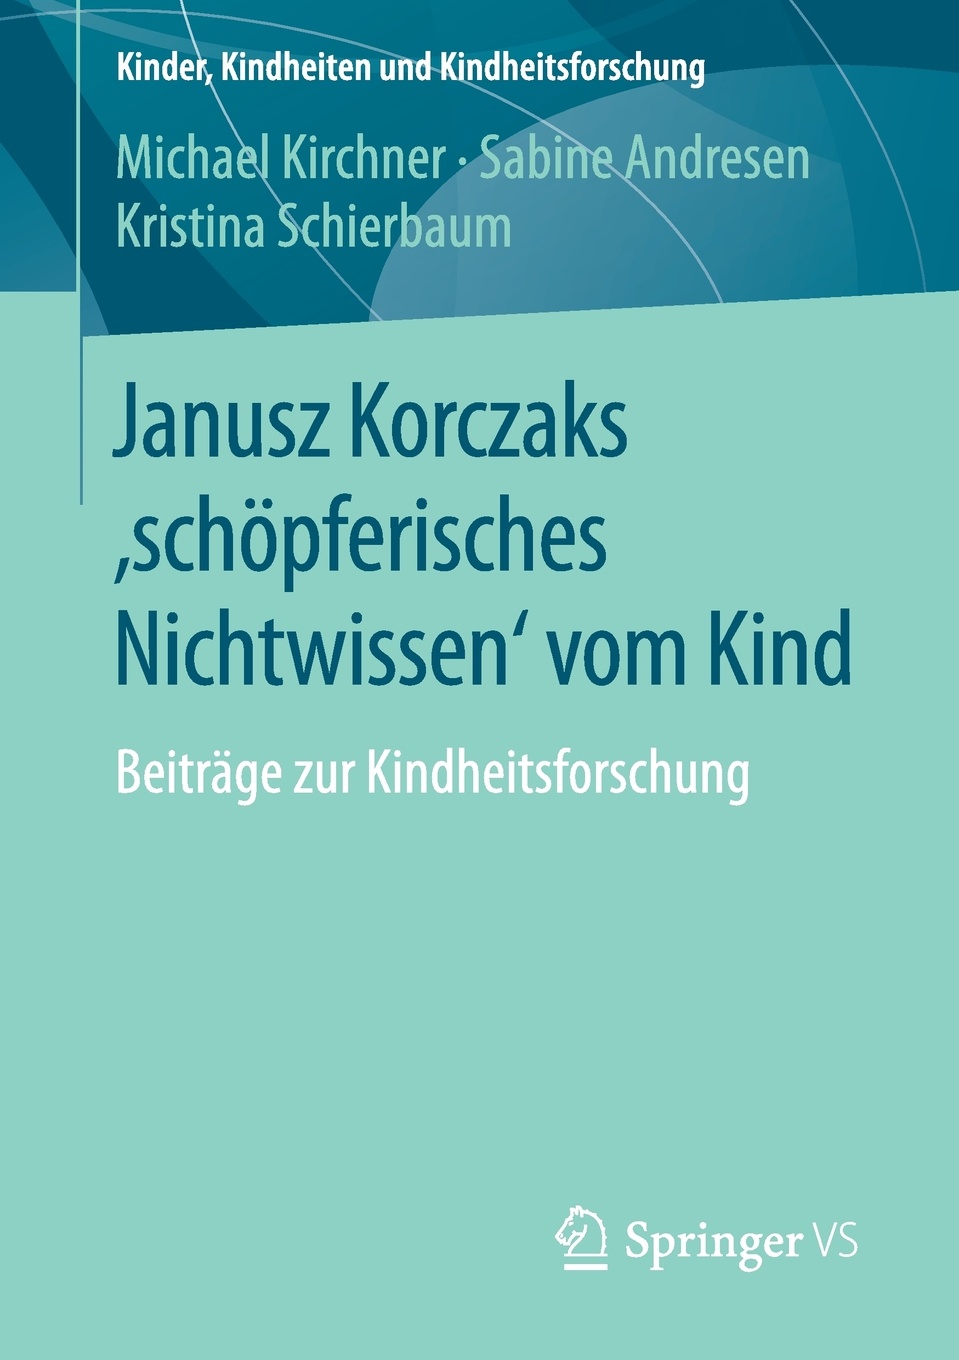 Janusz Korczaks `schopferisches Nichtwissen` vom Kind. Beitrage zur Kindheitsforschung